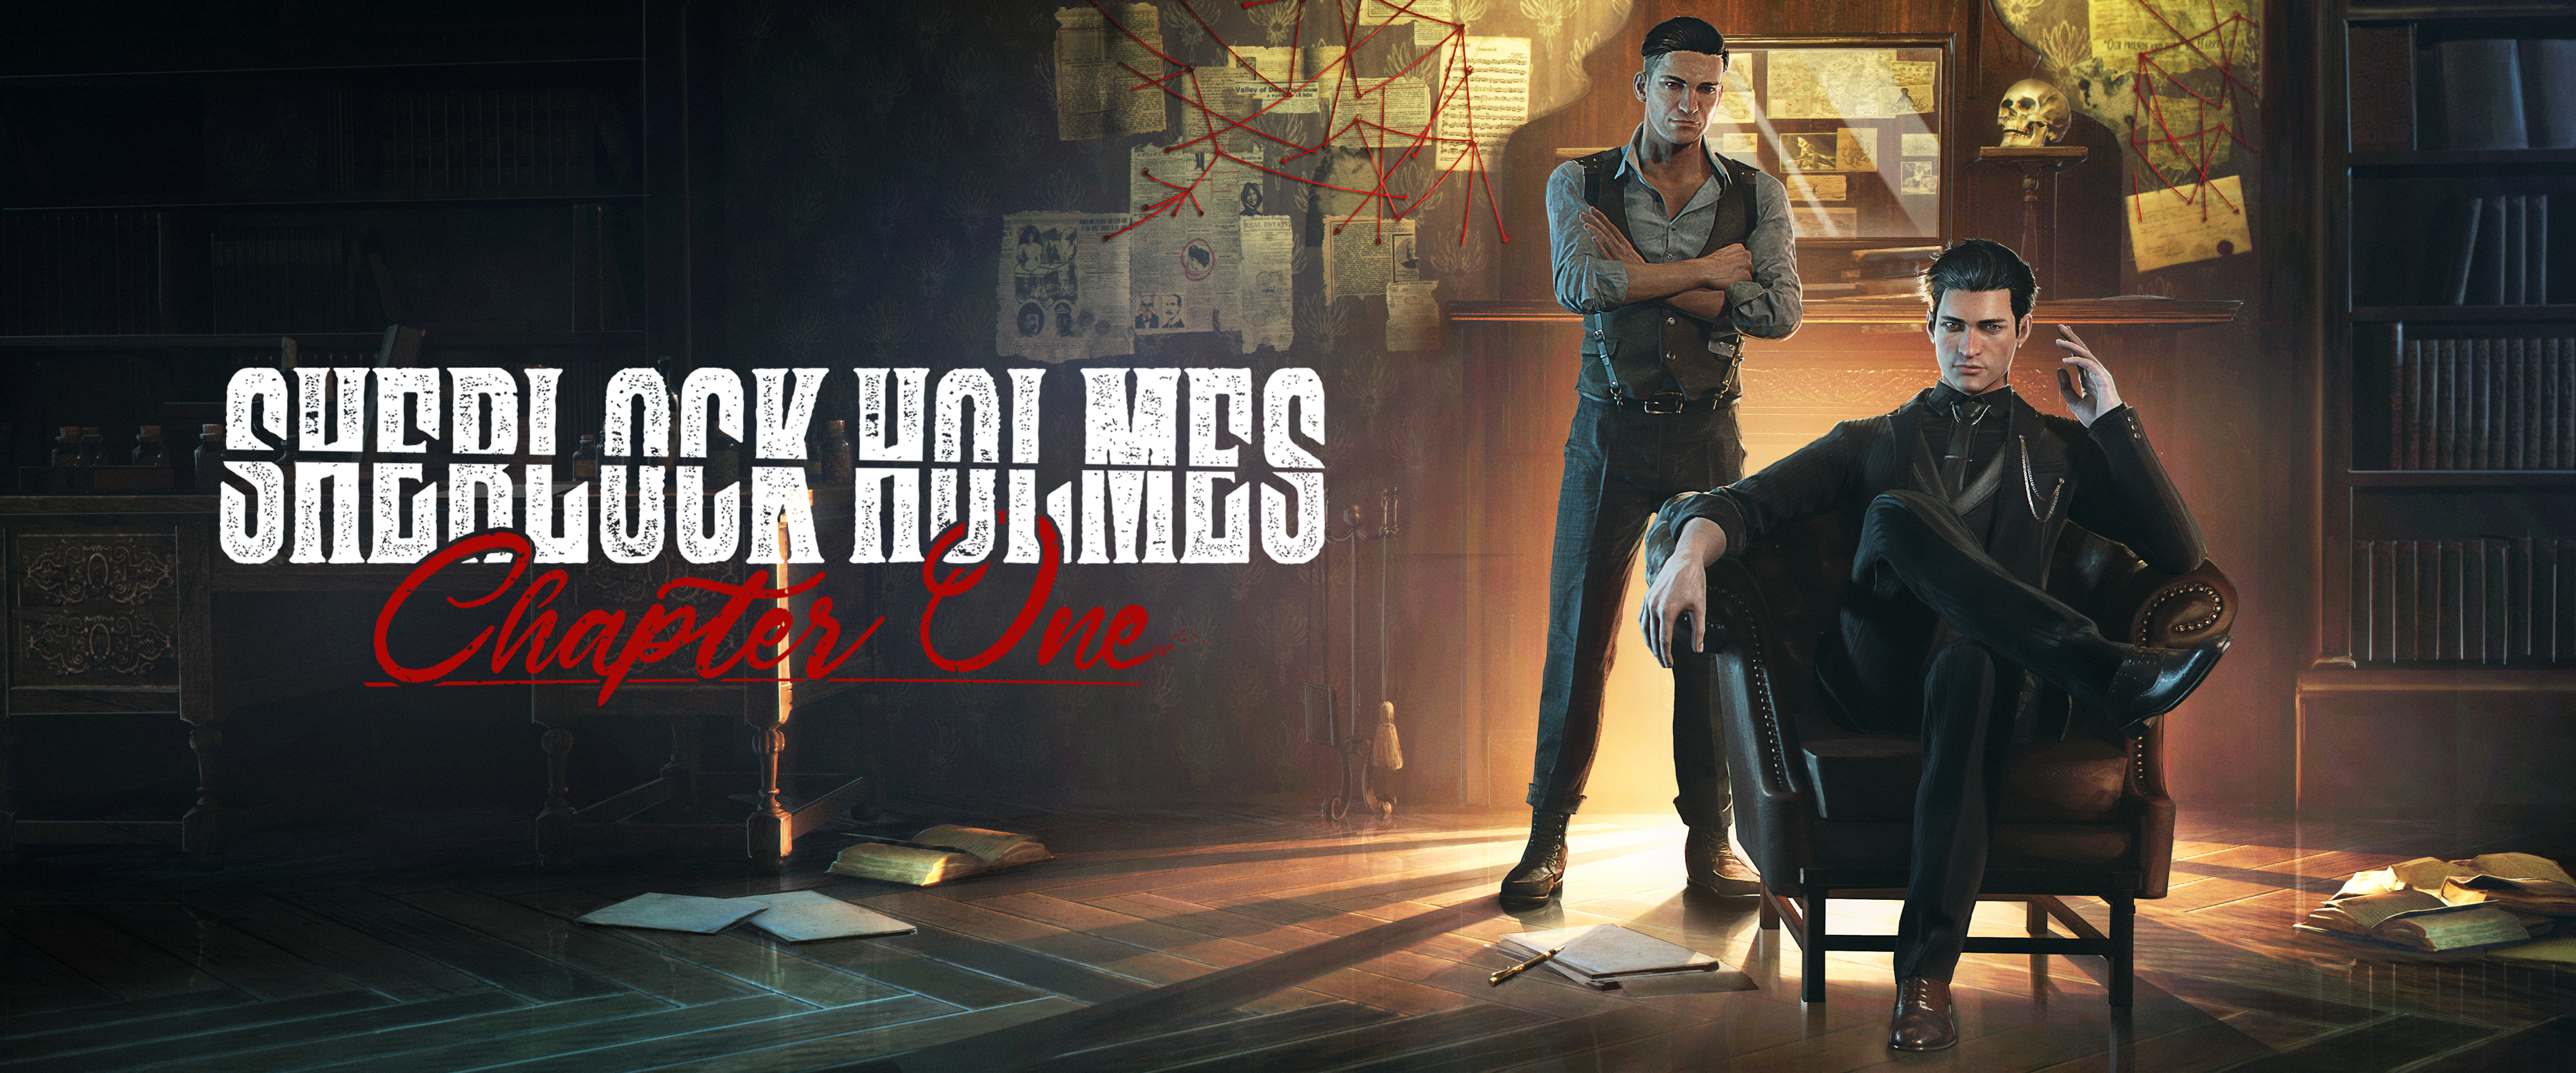 Обои шерлок холмс глава первая игры 2021 игры для PS4 на рабочий стол